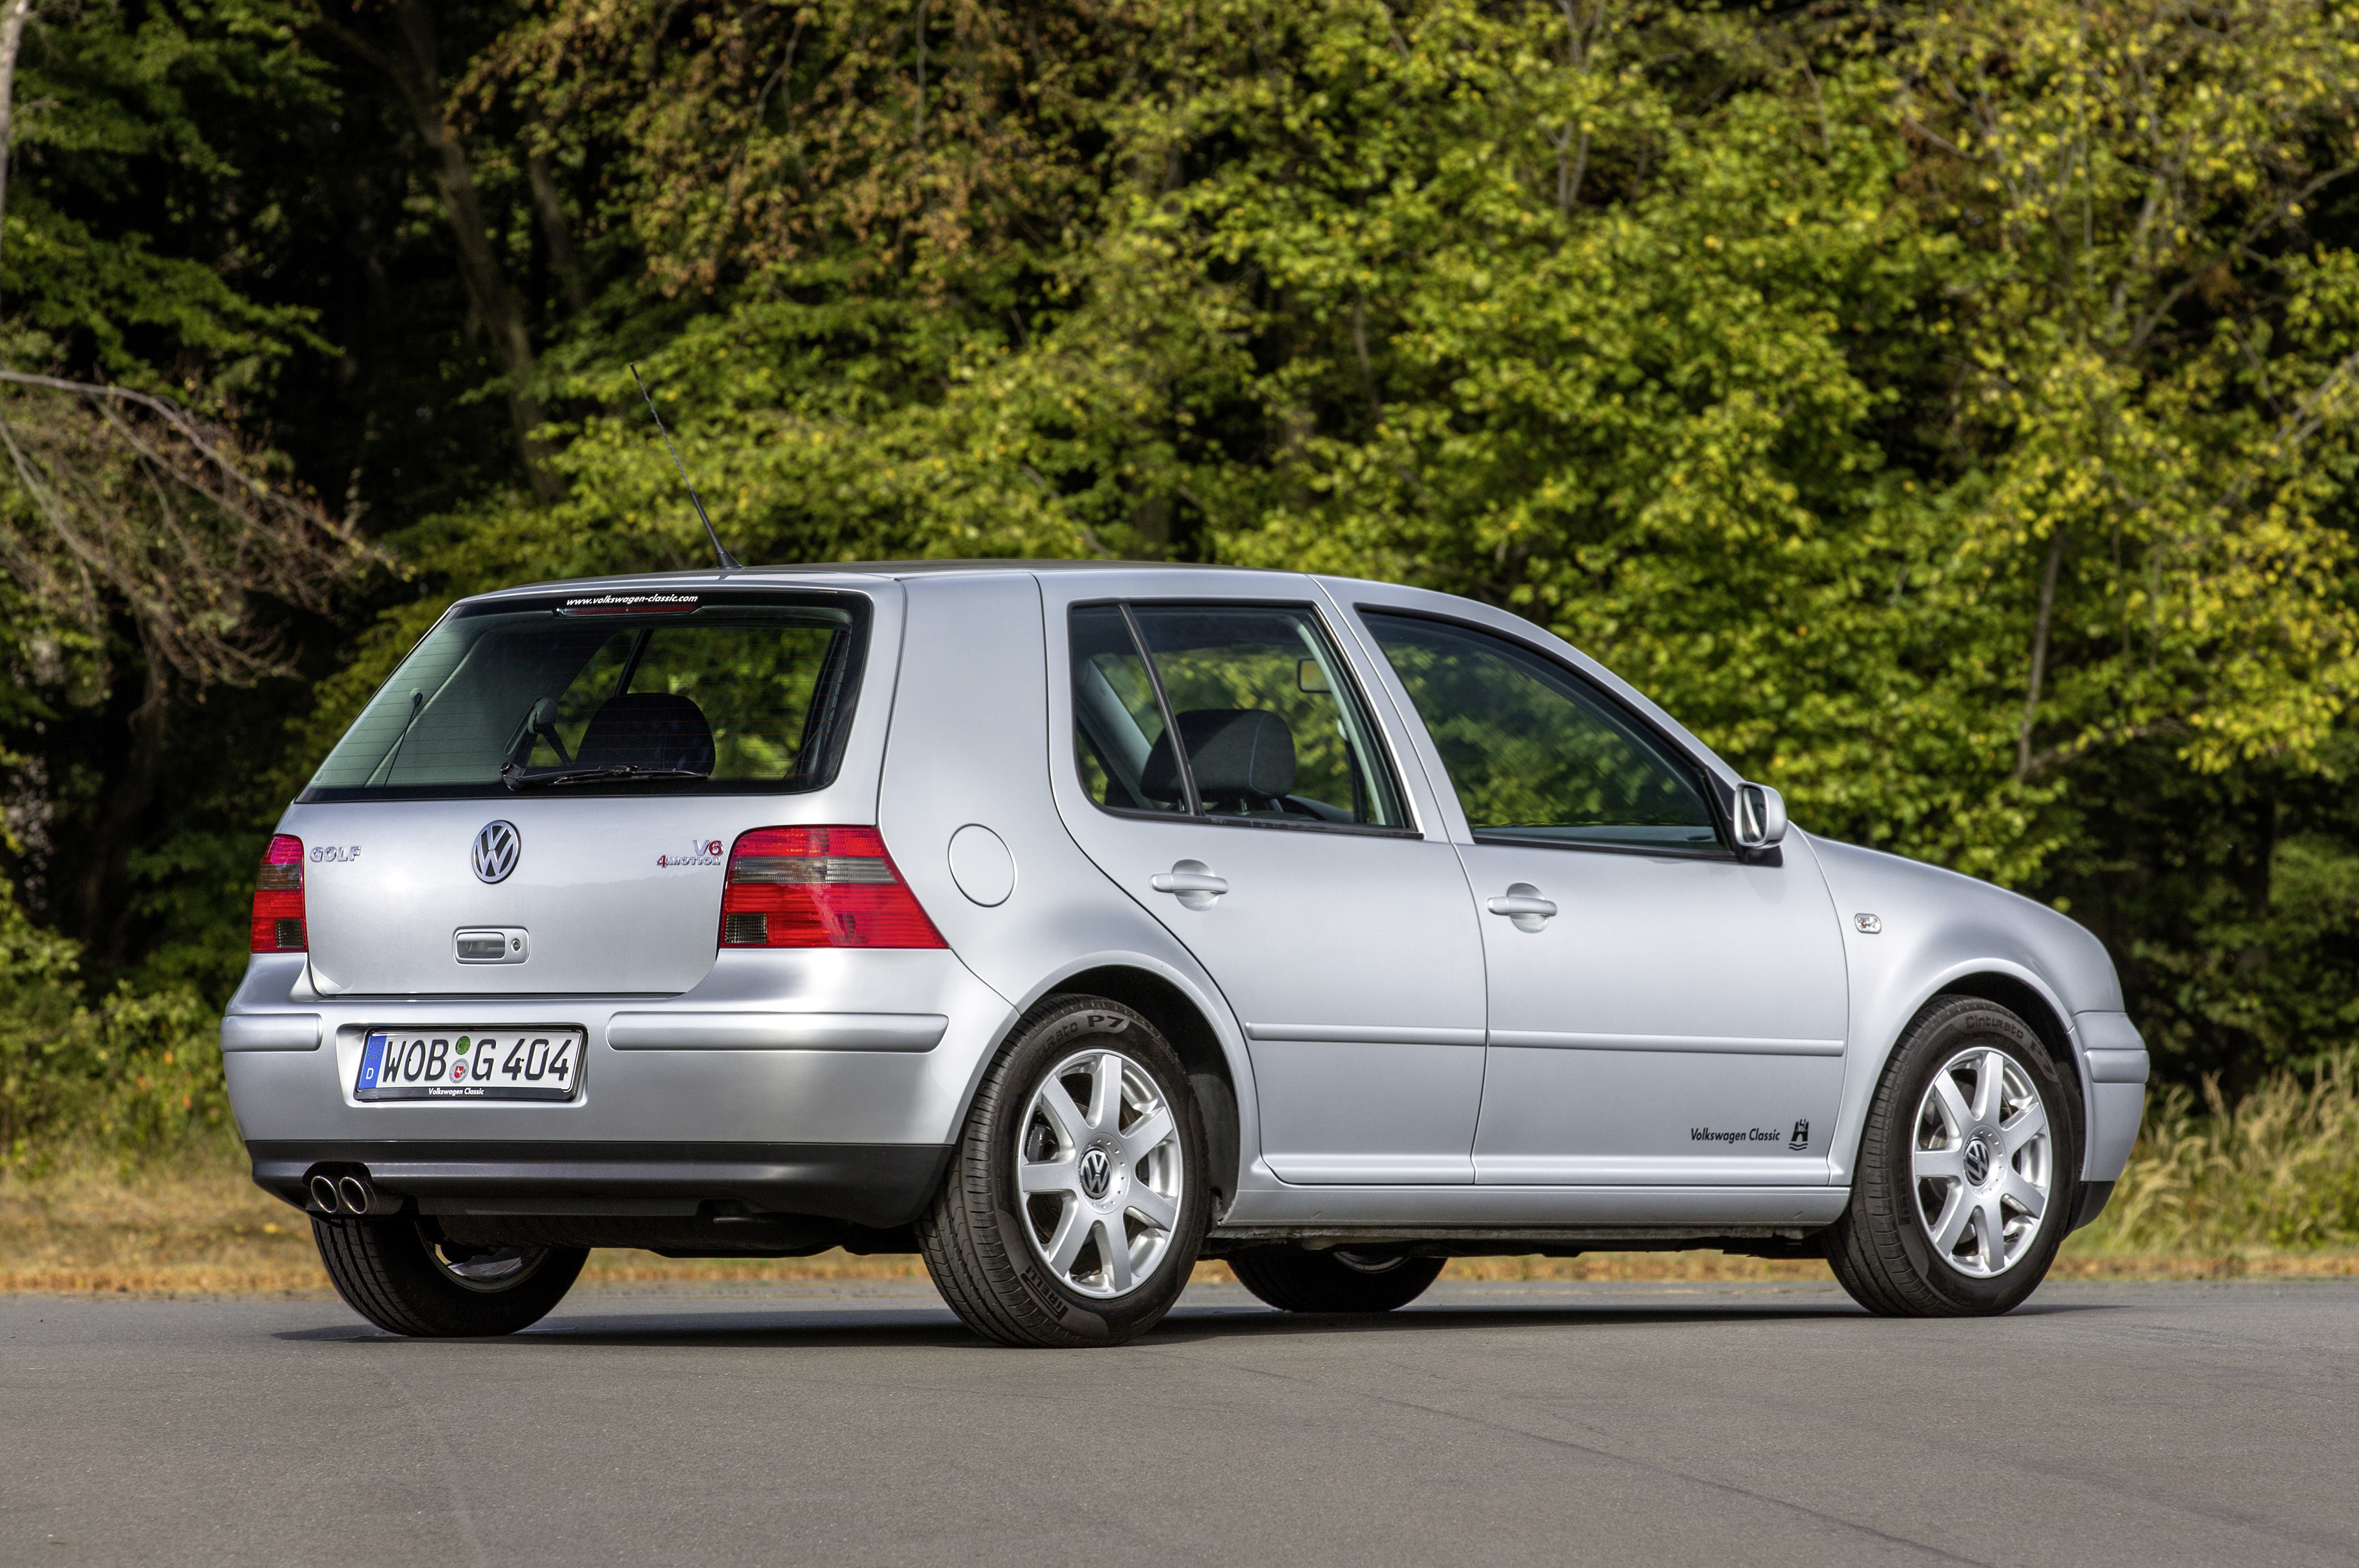 Volkswagen motion. VW Golf 4. Фольксваген гольф 4 поколения. Фольксваген гольф мк4. Фольксваген гольф 4 хэтчбек.